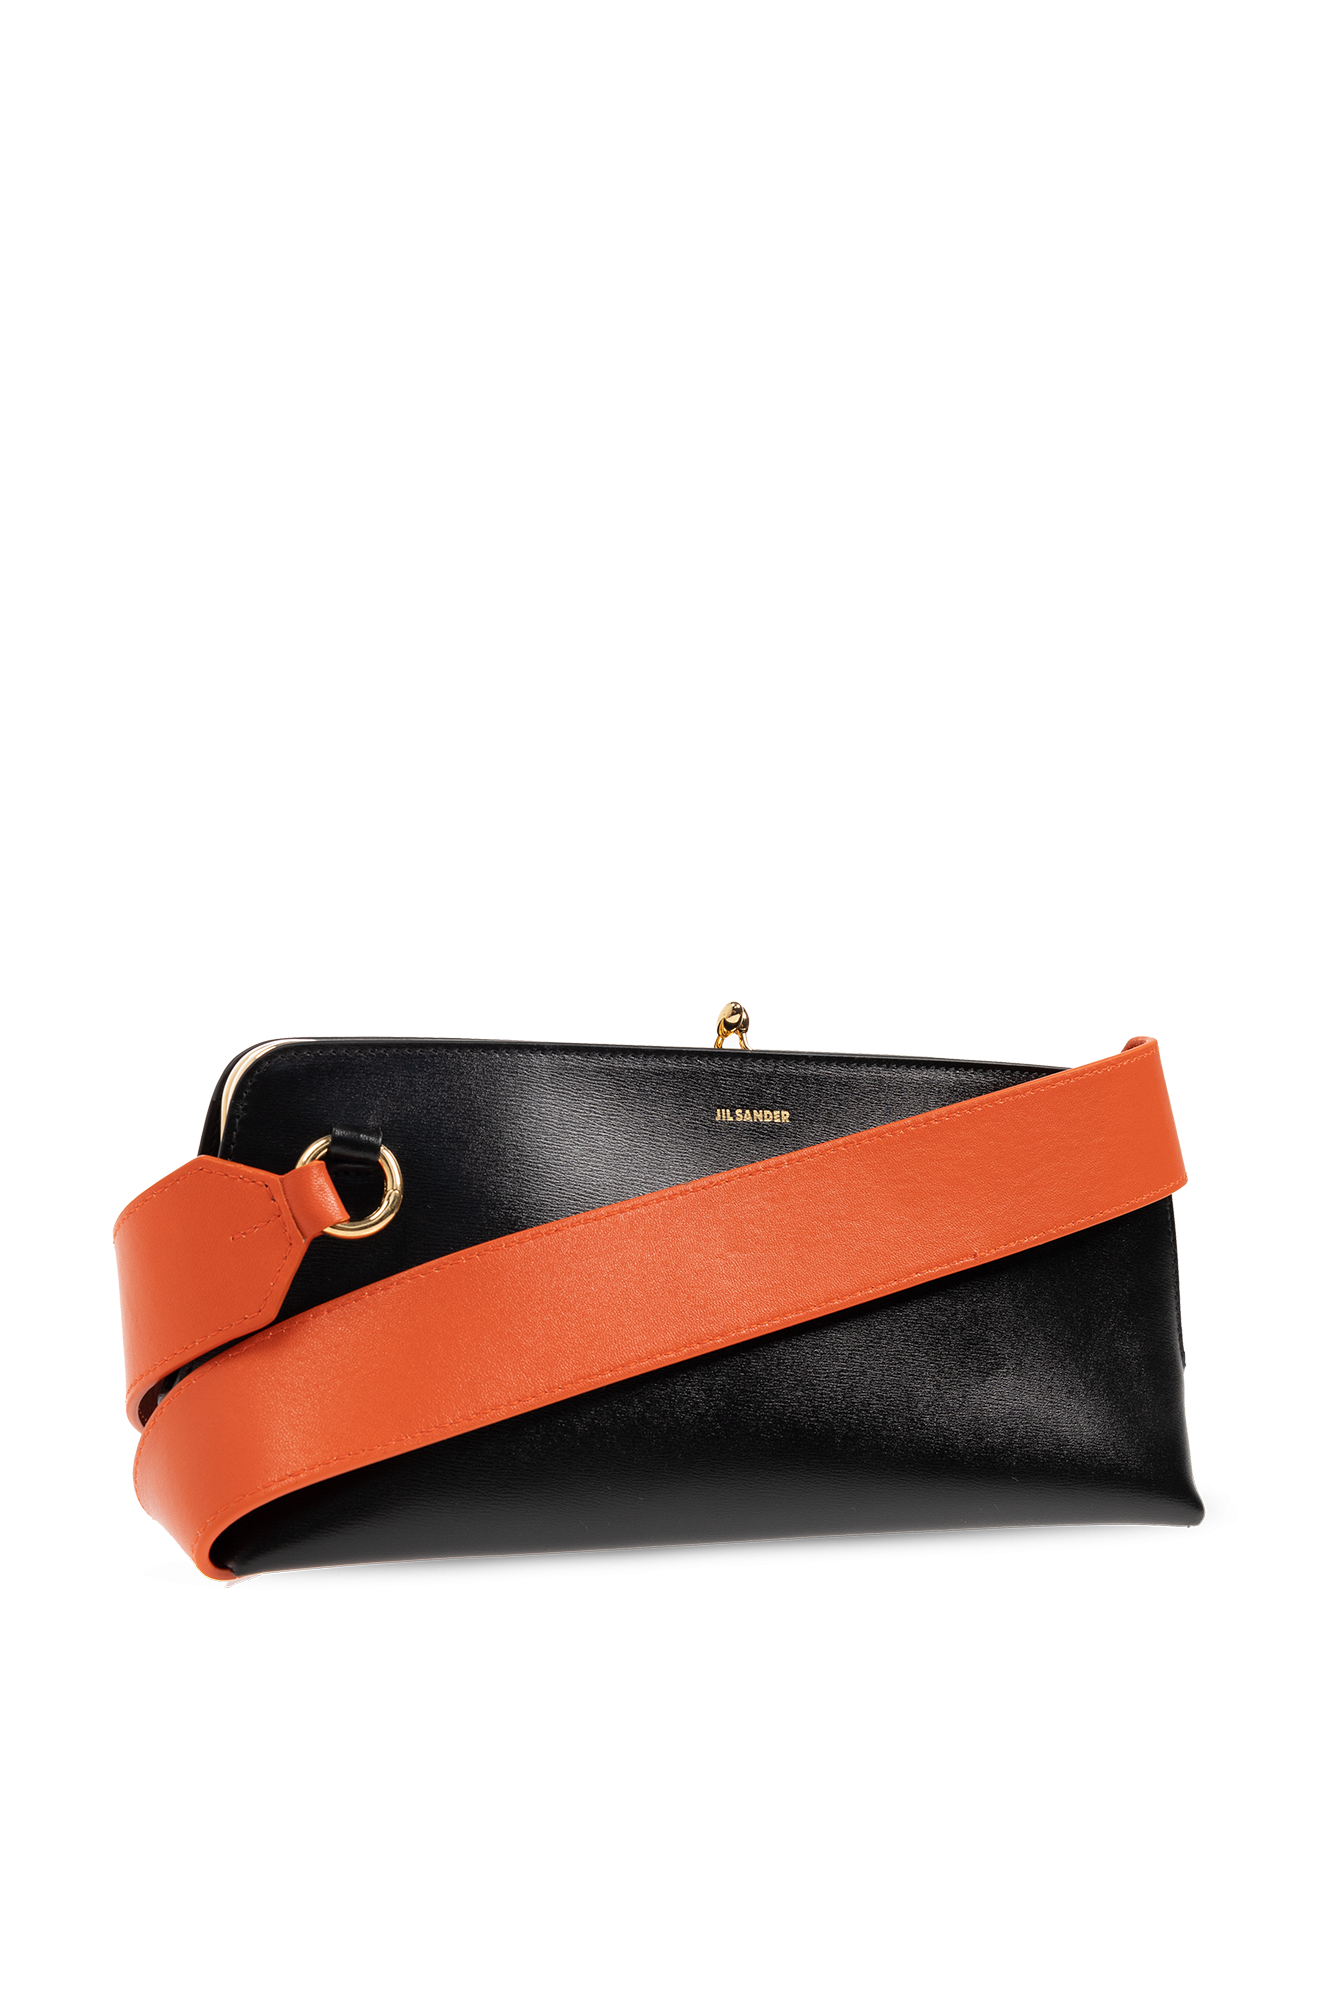 HealthdesignShops, Small Goji Leather Shoulder Bag